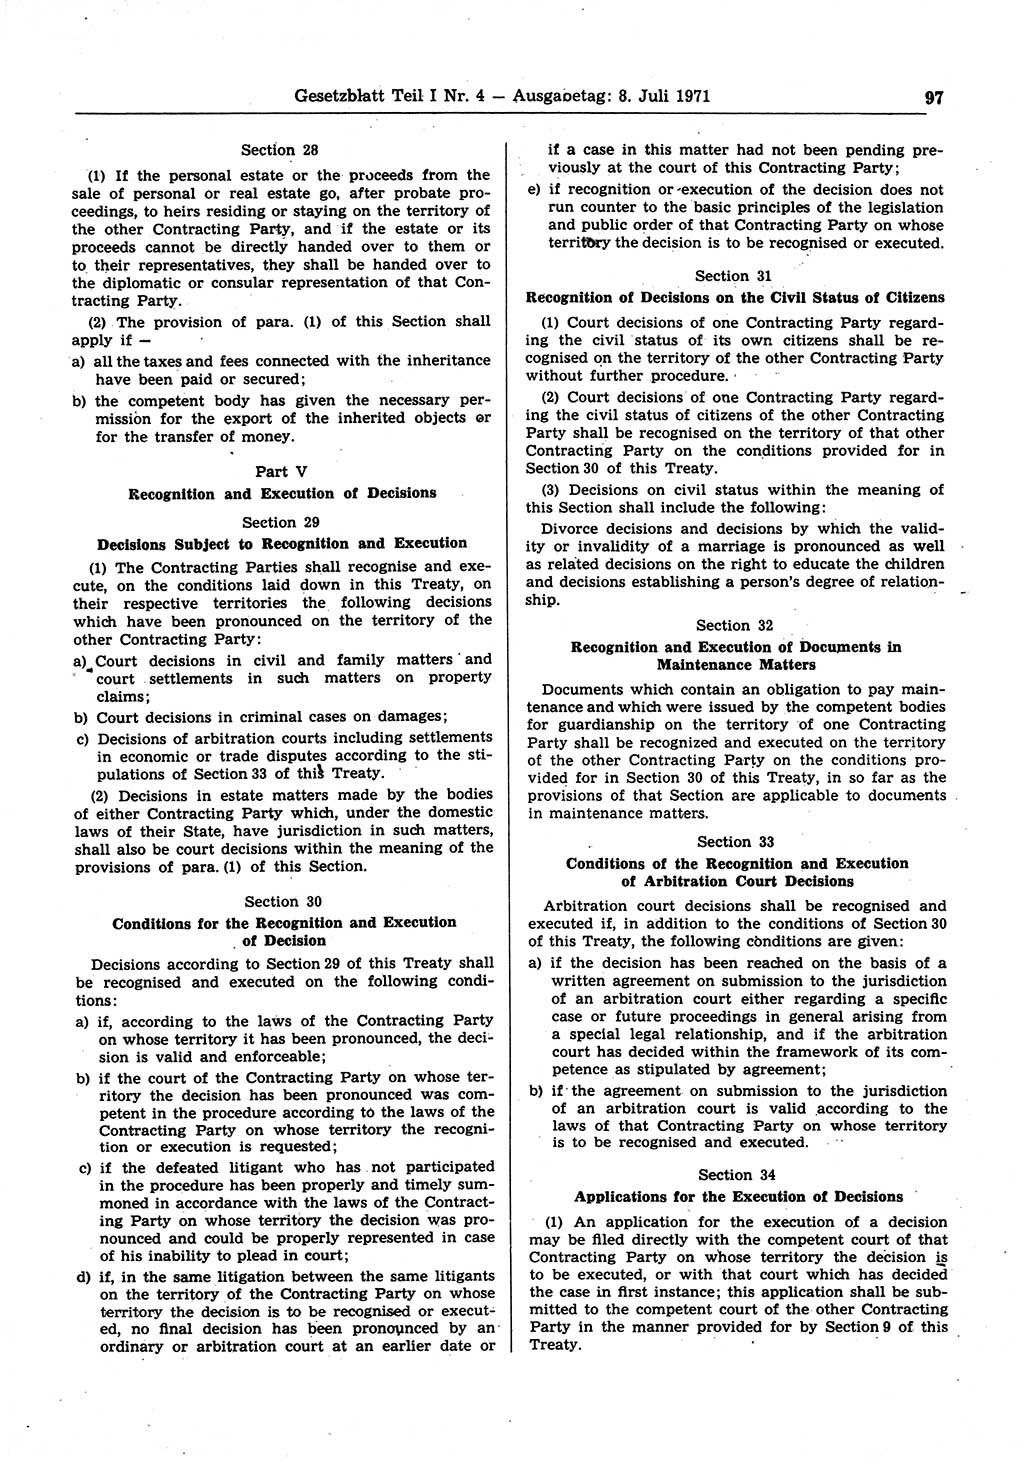 Gesetzblatt (GBl.) der Deutschen Demokratischen Republik (DDR) Teil Ⅰ 1971, Seite 97 (GBl. DDR Ⅰ 1971, S. 97)